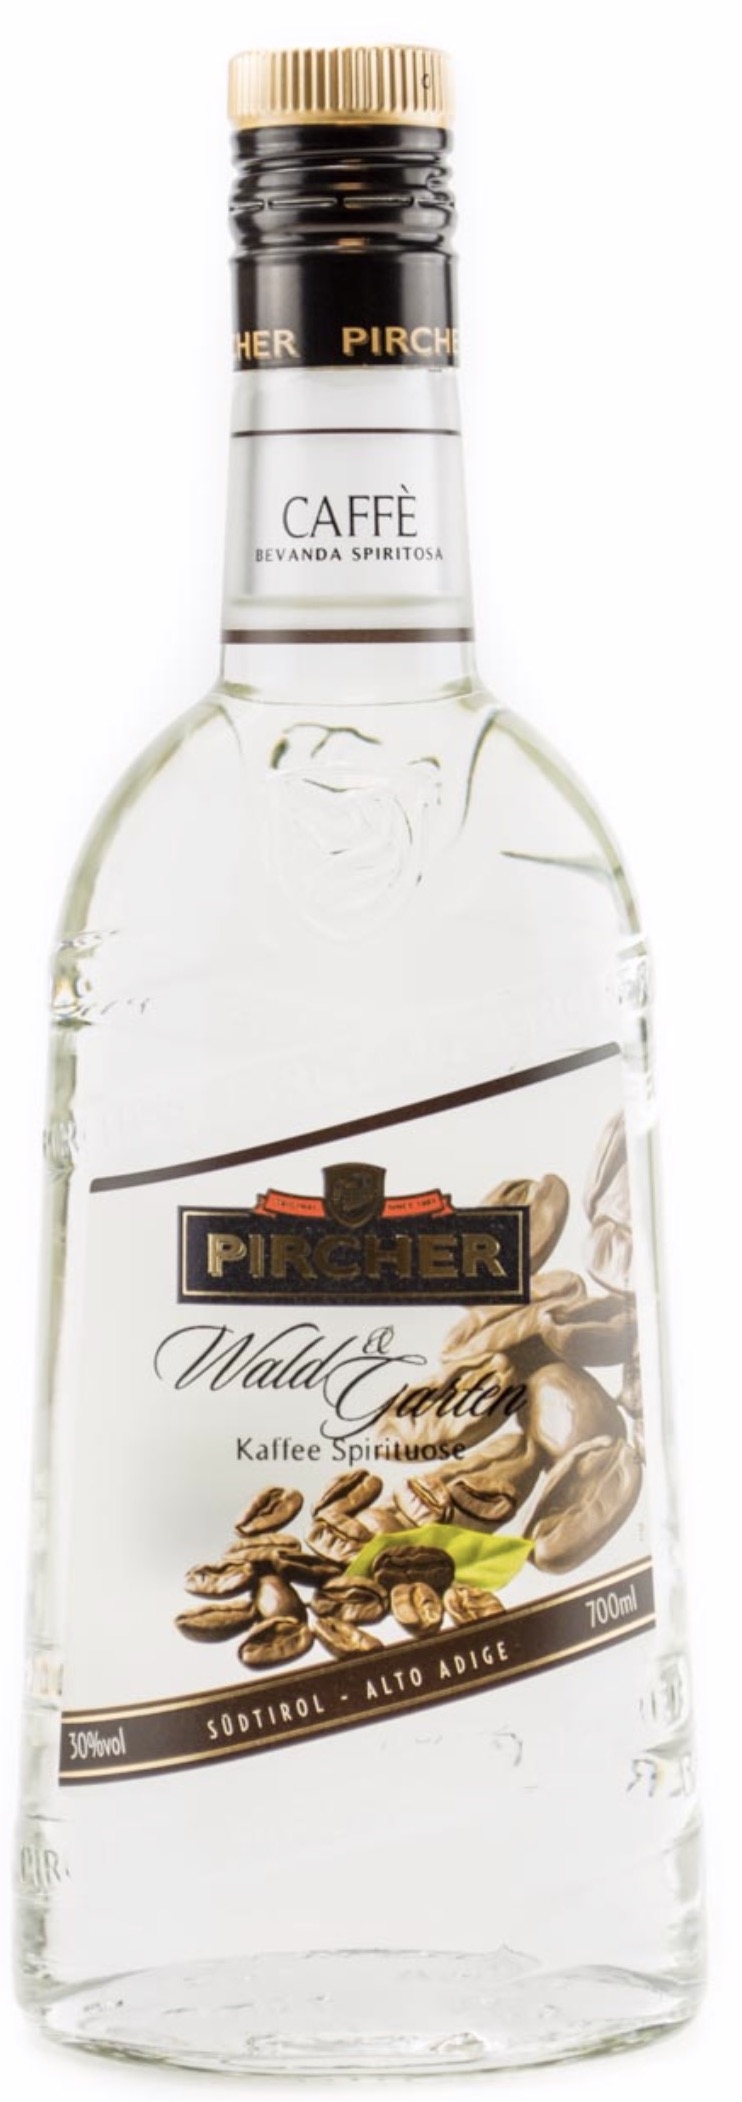 Pircher Wald & Garten Kaffee Spirituose 30% vol. 0,7L